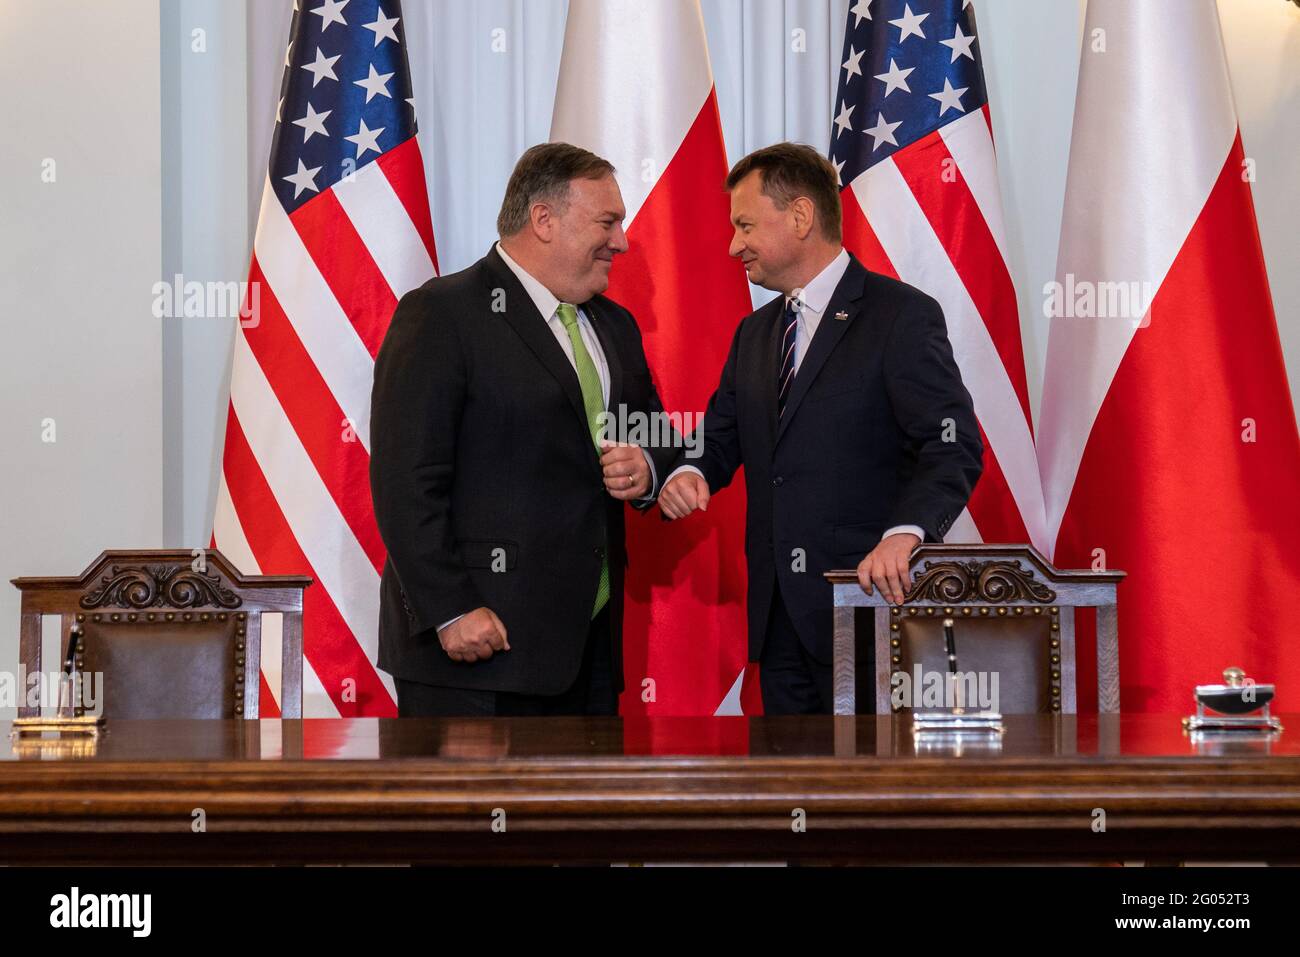 Le secrétaire d'État Michael R. Pompeo participe à une cérémonie de signature de l'accord de coopération renforcée entre les États-Unis et la Pologne avec le président polonais Andrzej Duda et le ministre polonais de la Défense nationale Mariusz Błaszczak, à Varsovie, en Pologne, le 15 août 2020, Banque D'Images